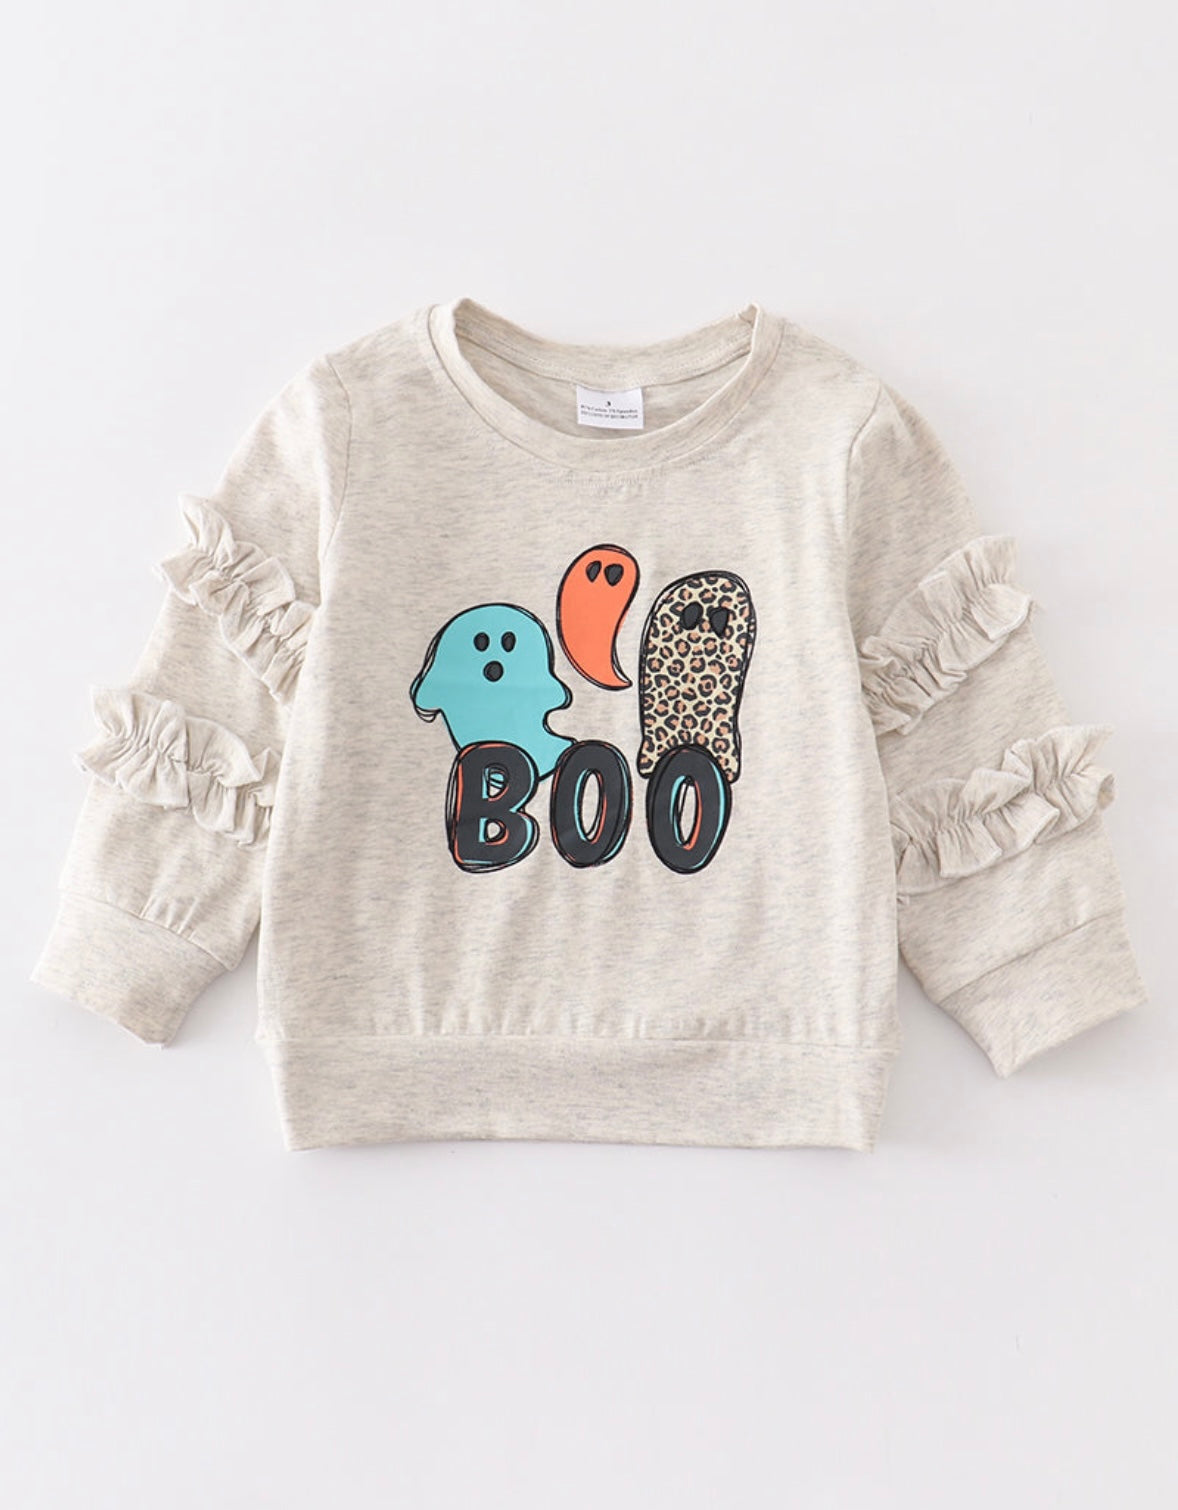 “Boo” Ruffle Sleeve Sweatshirt